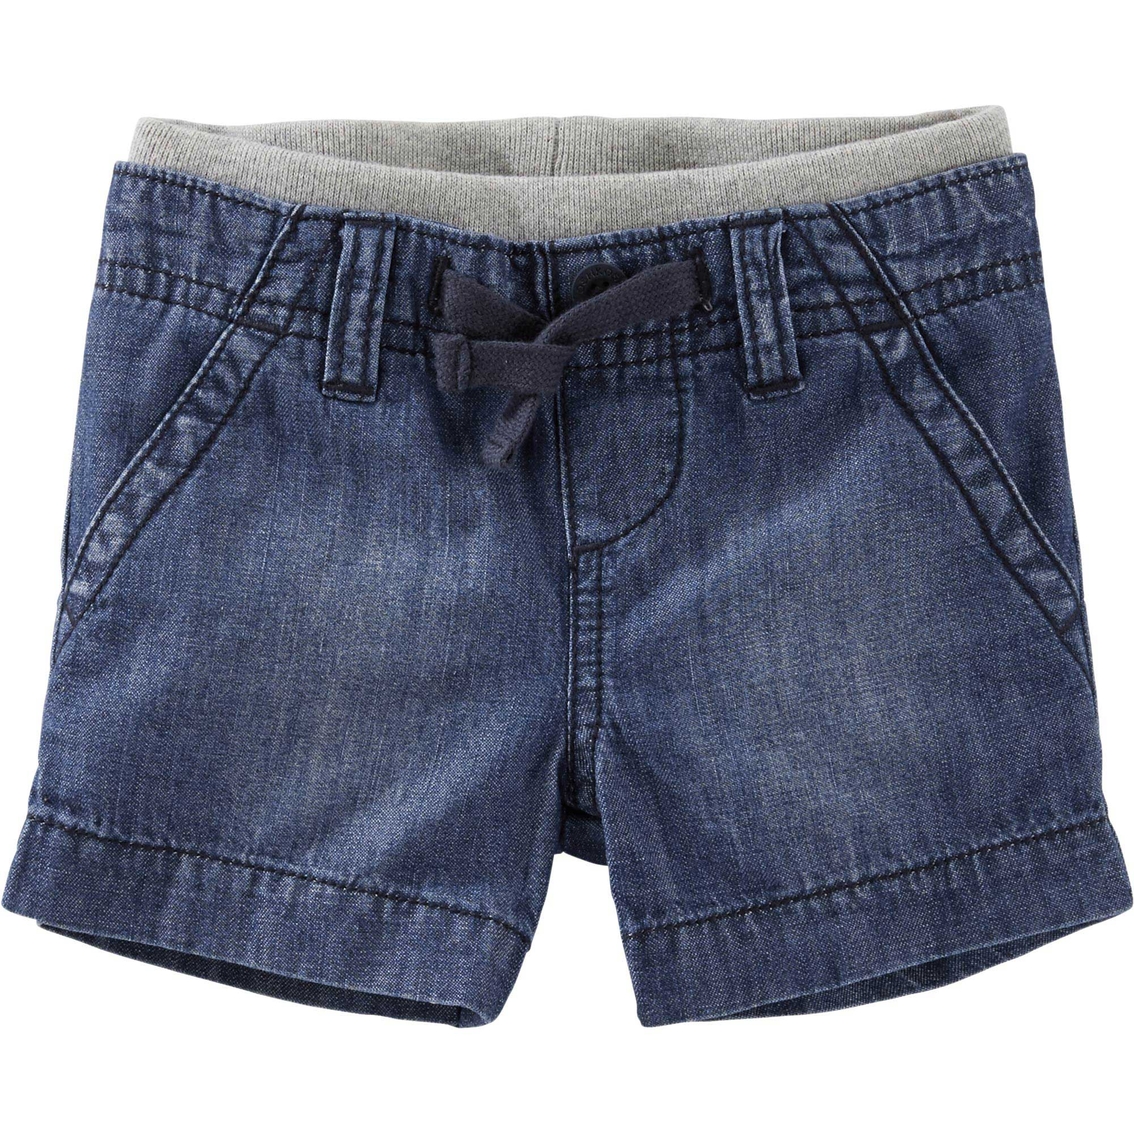 Osh Kosh B'gosh Infant Boys Pull On Denim Shorts | Baby Boy 0-24 Months ...